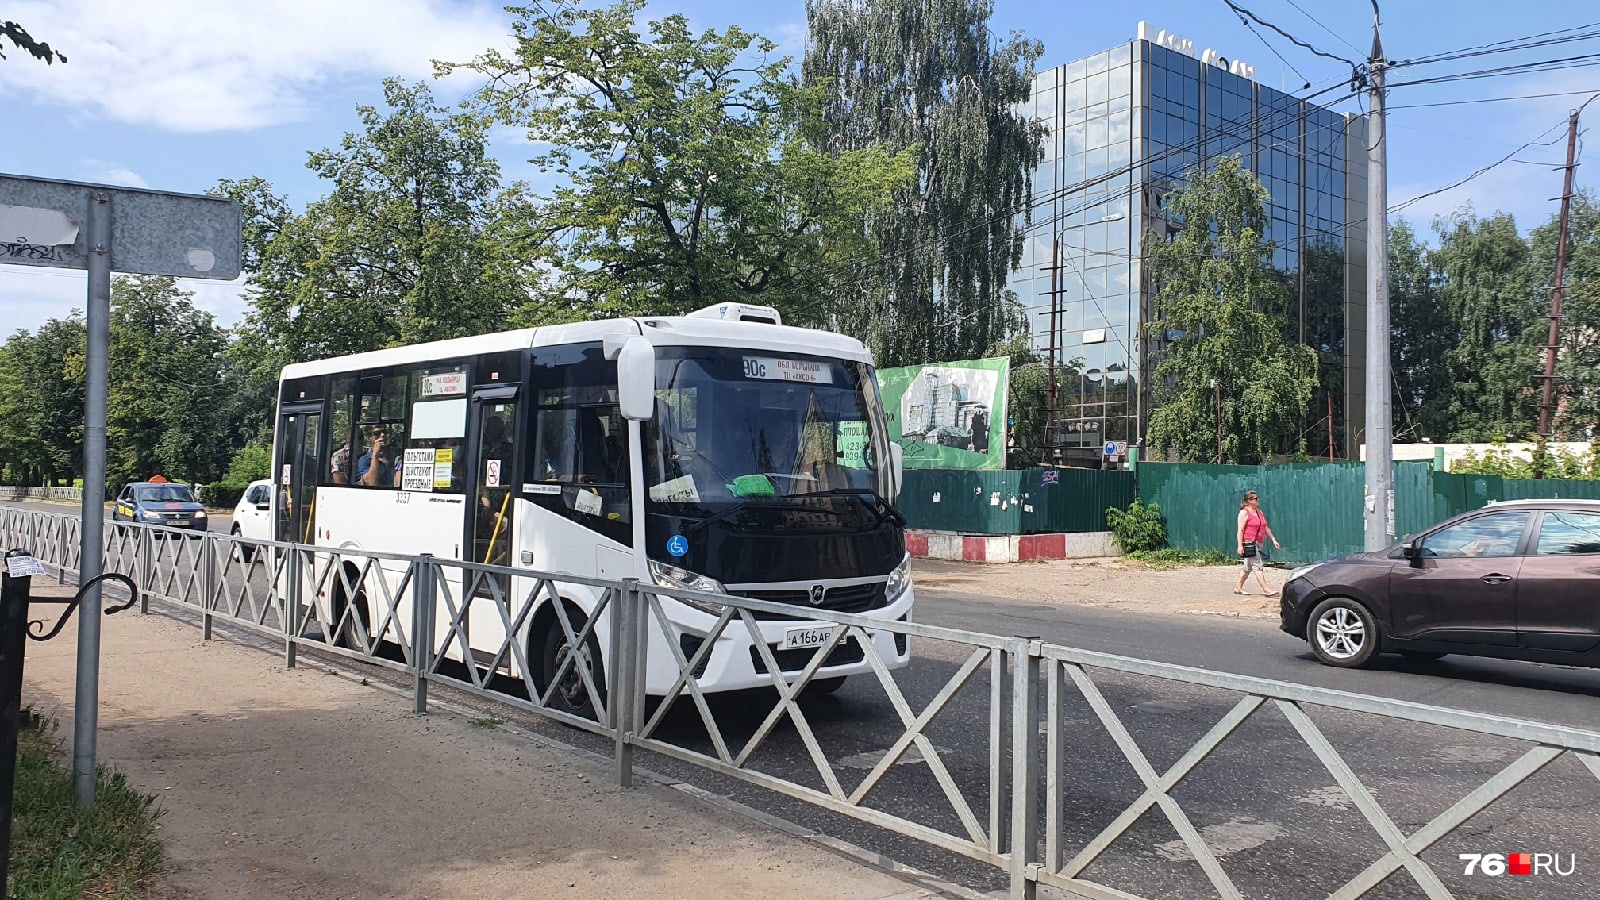 Автобусы компании «Автократ» пришли на ярославский рынок задолго до внедрения новой транспортной схемы